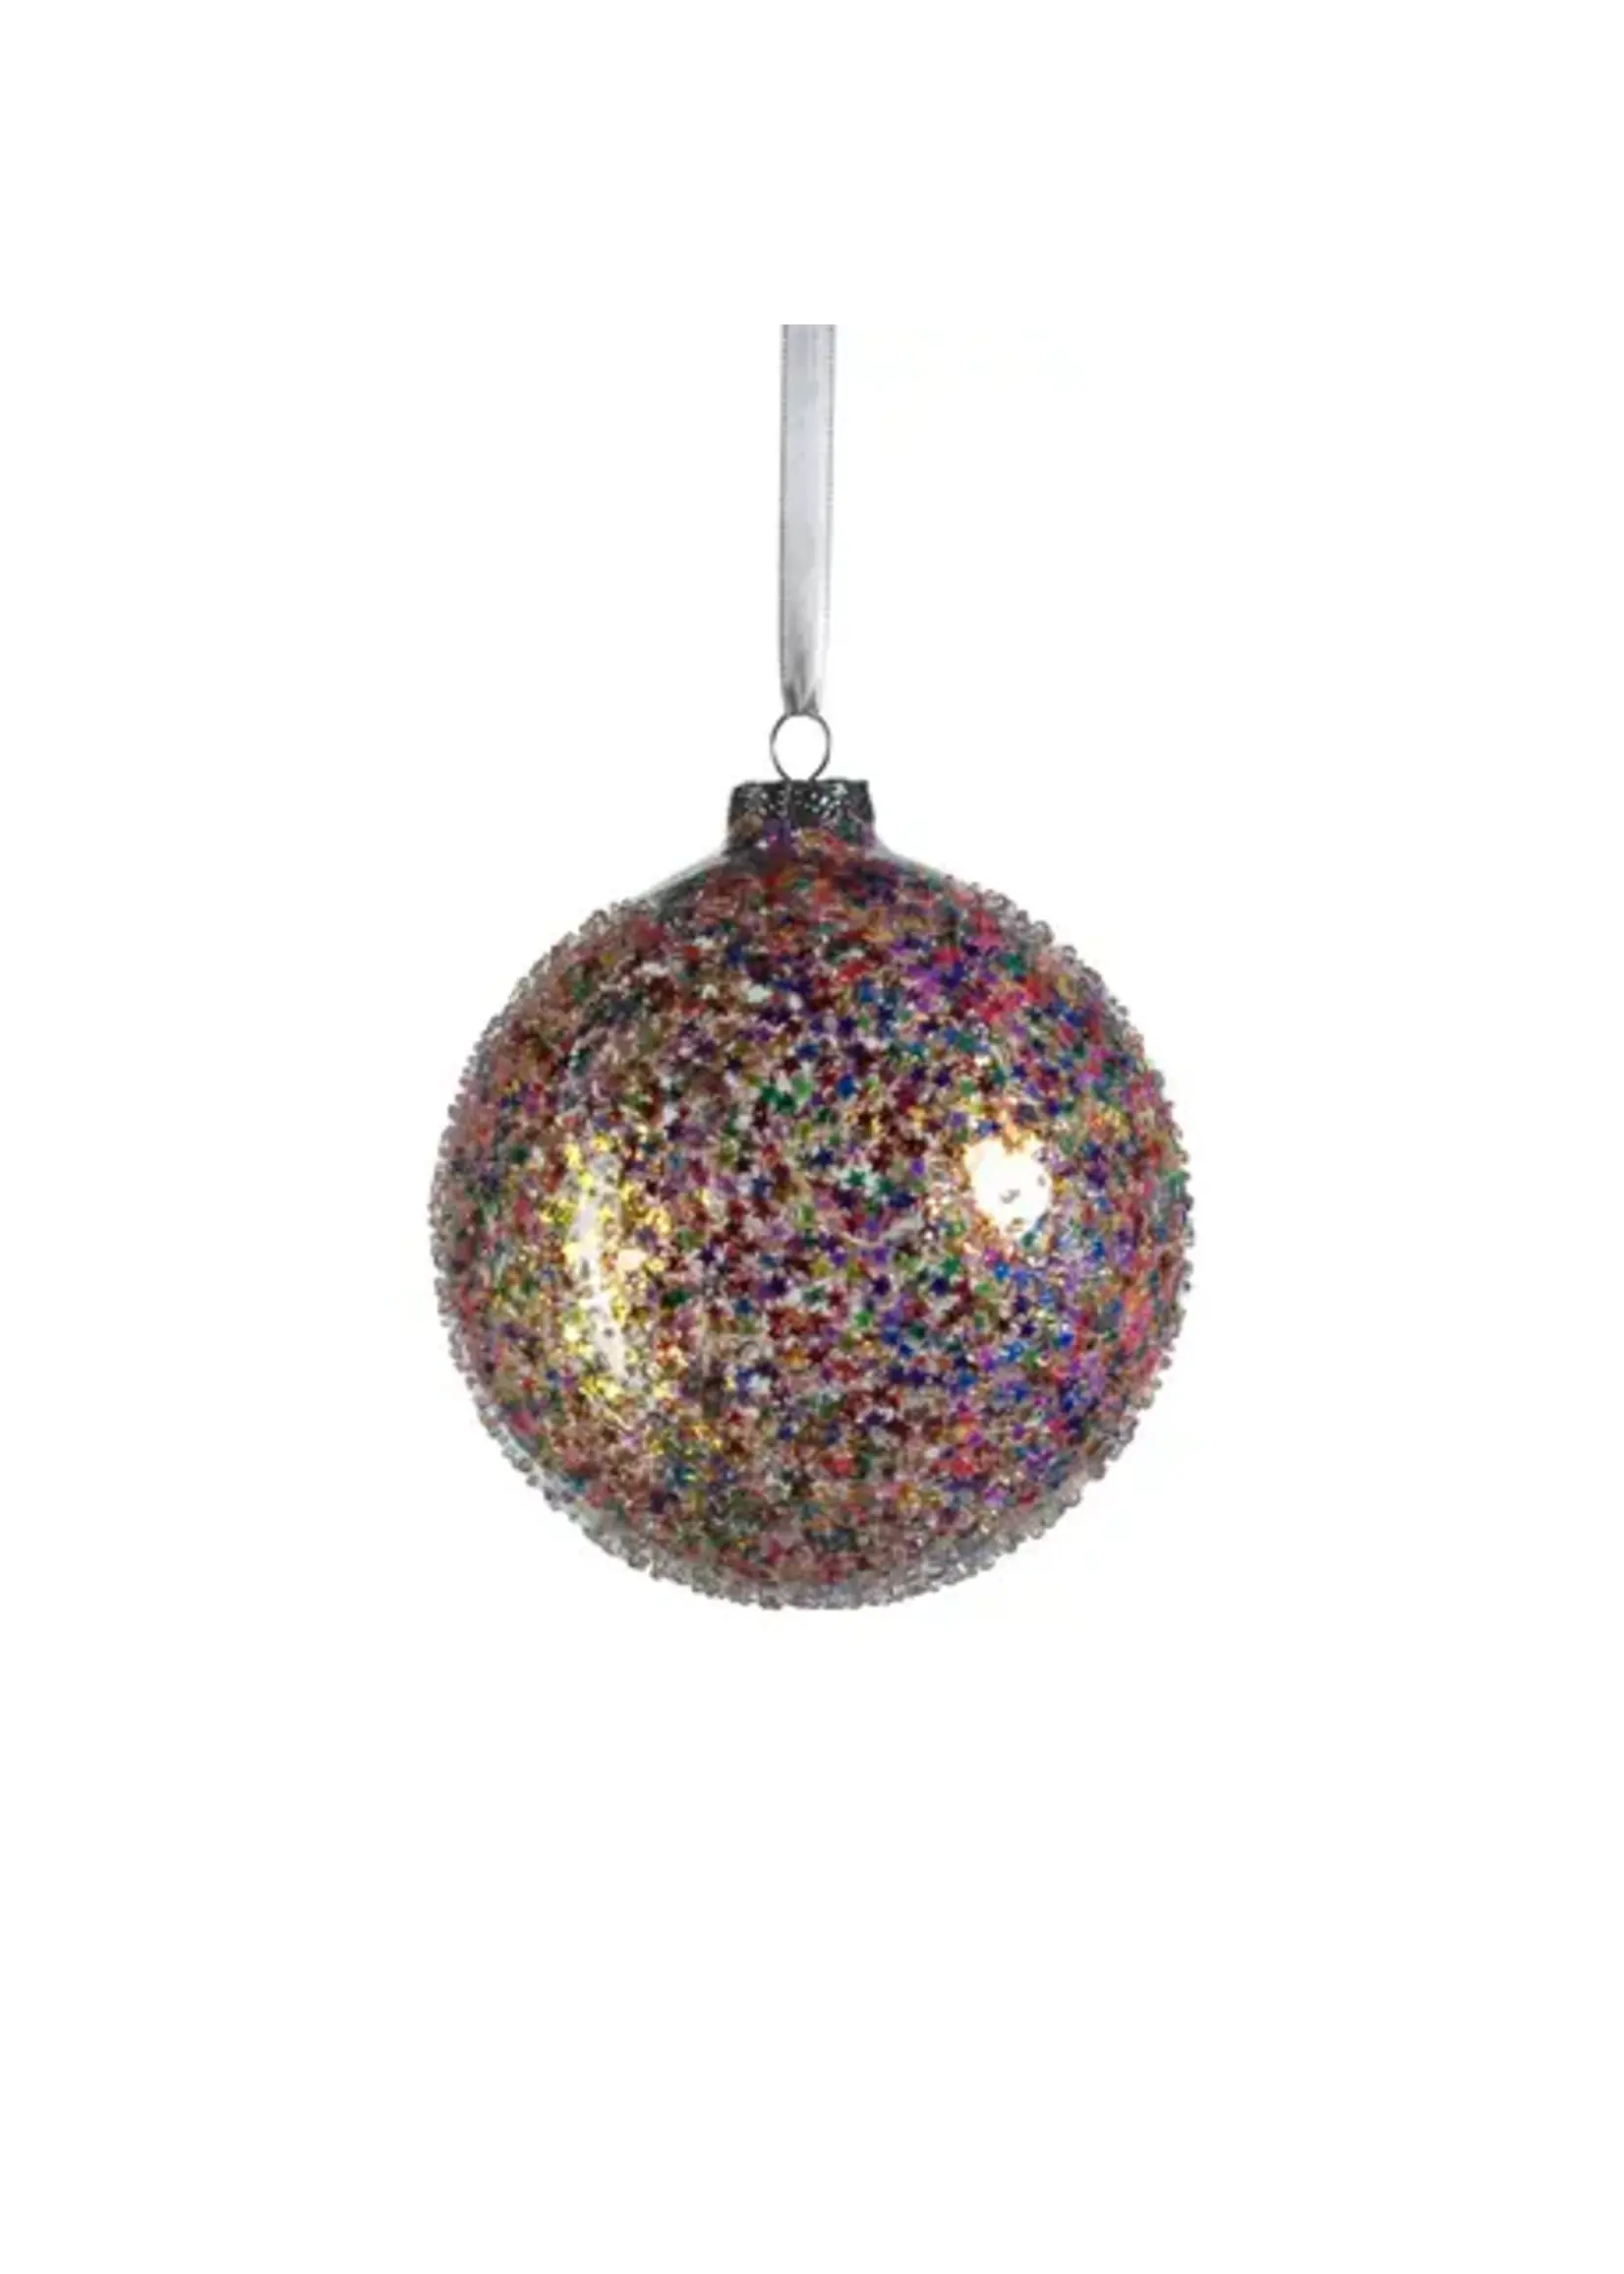 Zodax Confetti Glass Ball Ornament, Multi Bright, 4.75"